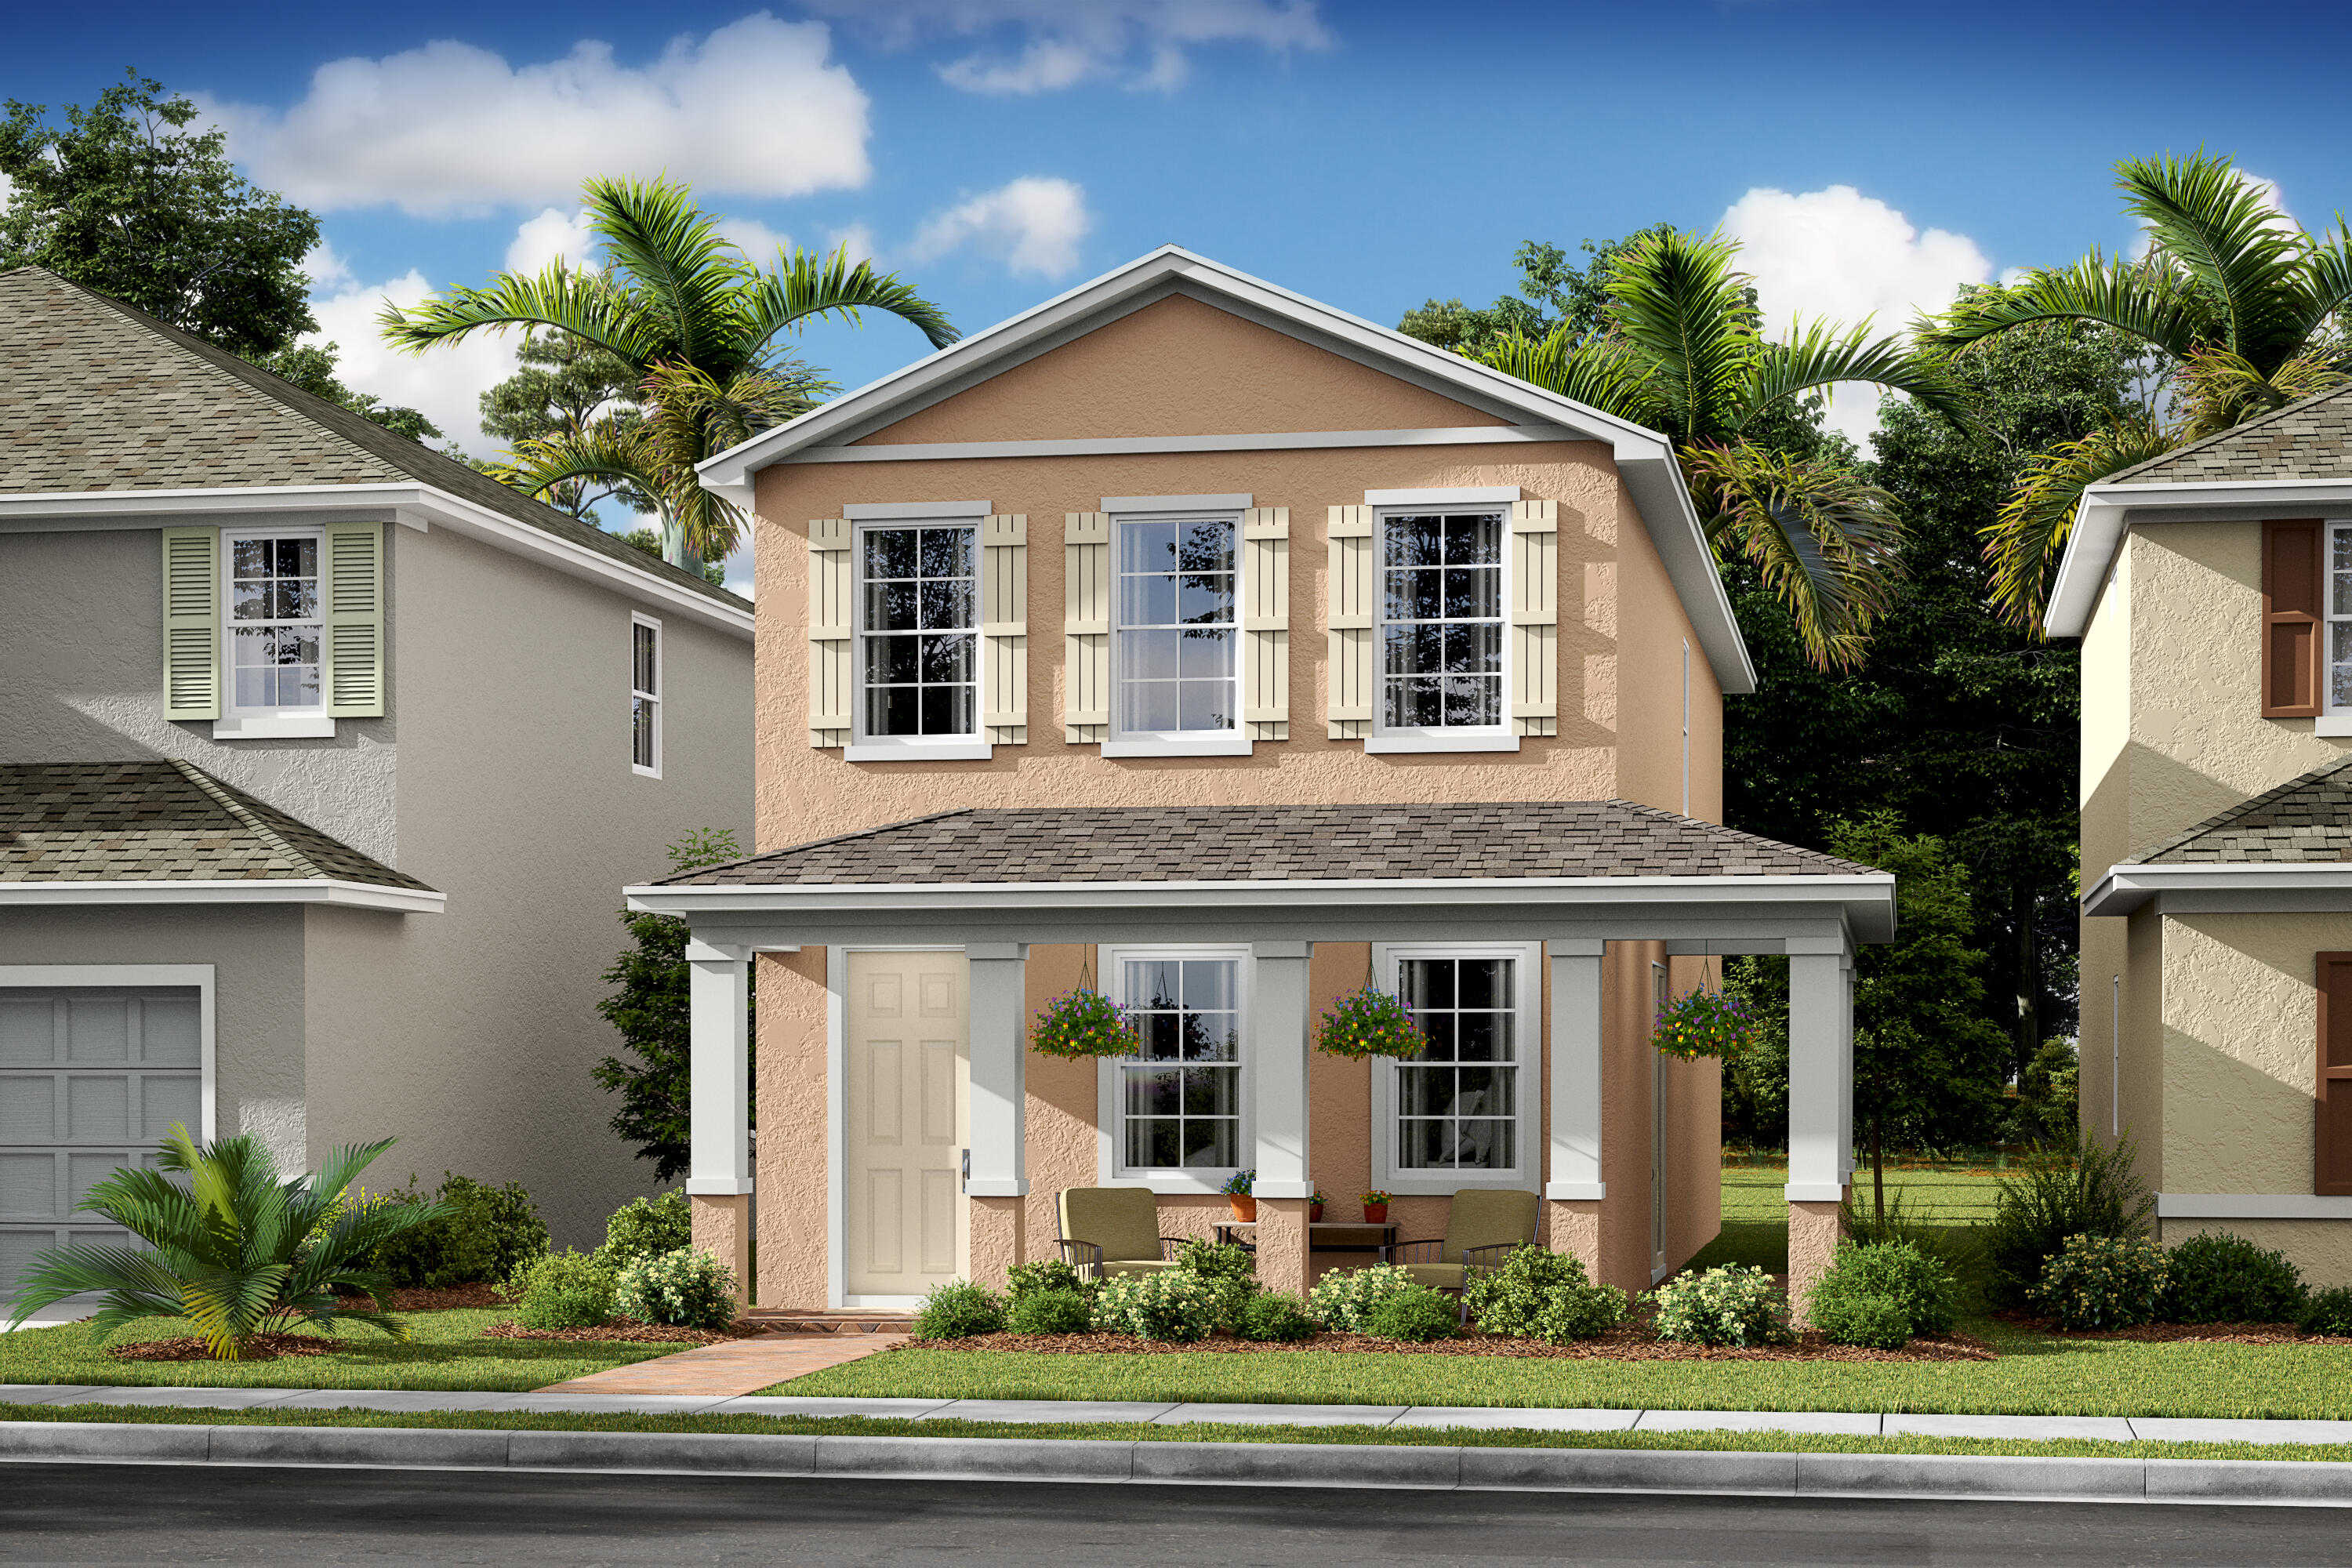 View Port Saint Lucie, FL 34952 house